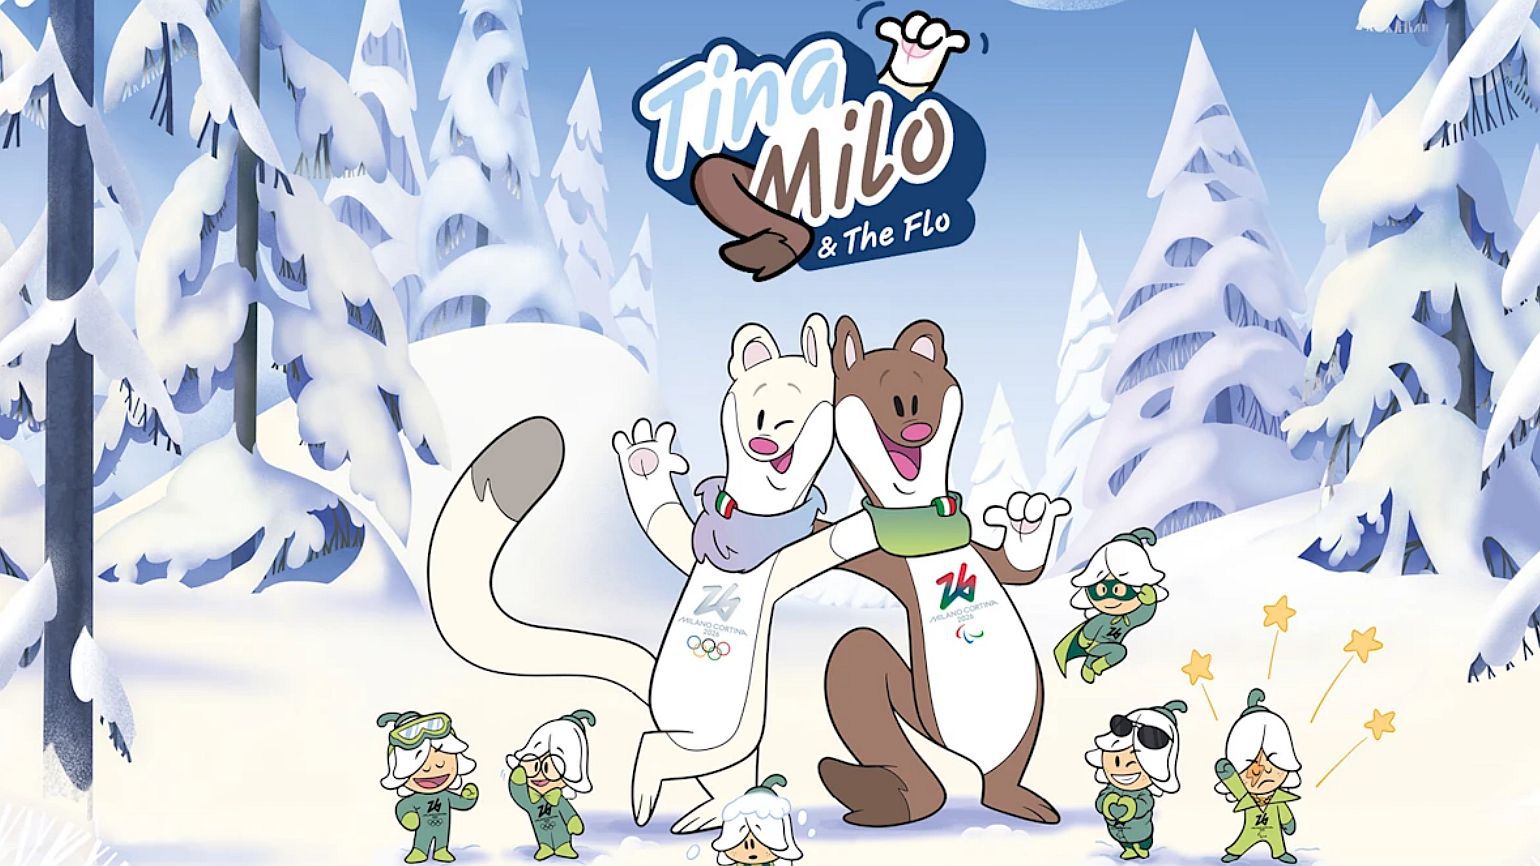 Tina és Milo lesznek a téli olimpia kabalafigurái (fotó: olympics.com)